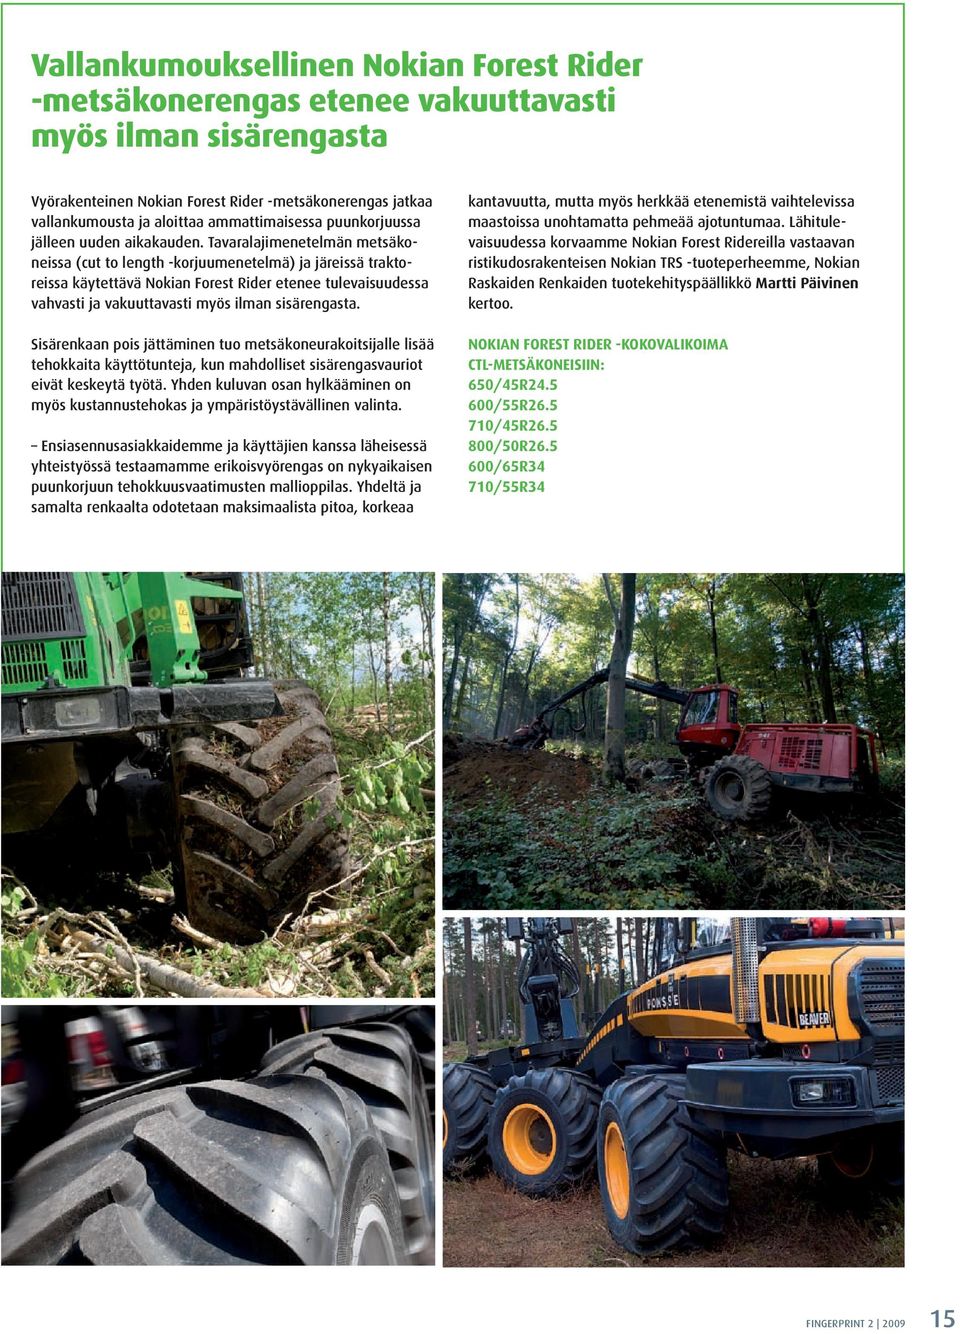 Tavaralajimenetelmän metsäkoneissa (cut to length -korjuumenetelmä) ja järeissä traktoreissa käytettävä Nokian Forest Rider etenee tulevaisuudessa vahvasti ja vakuuttavasti myös ilman sisärengasta.